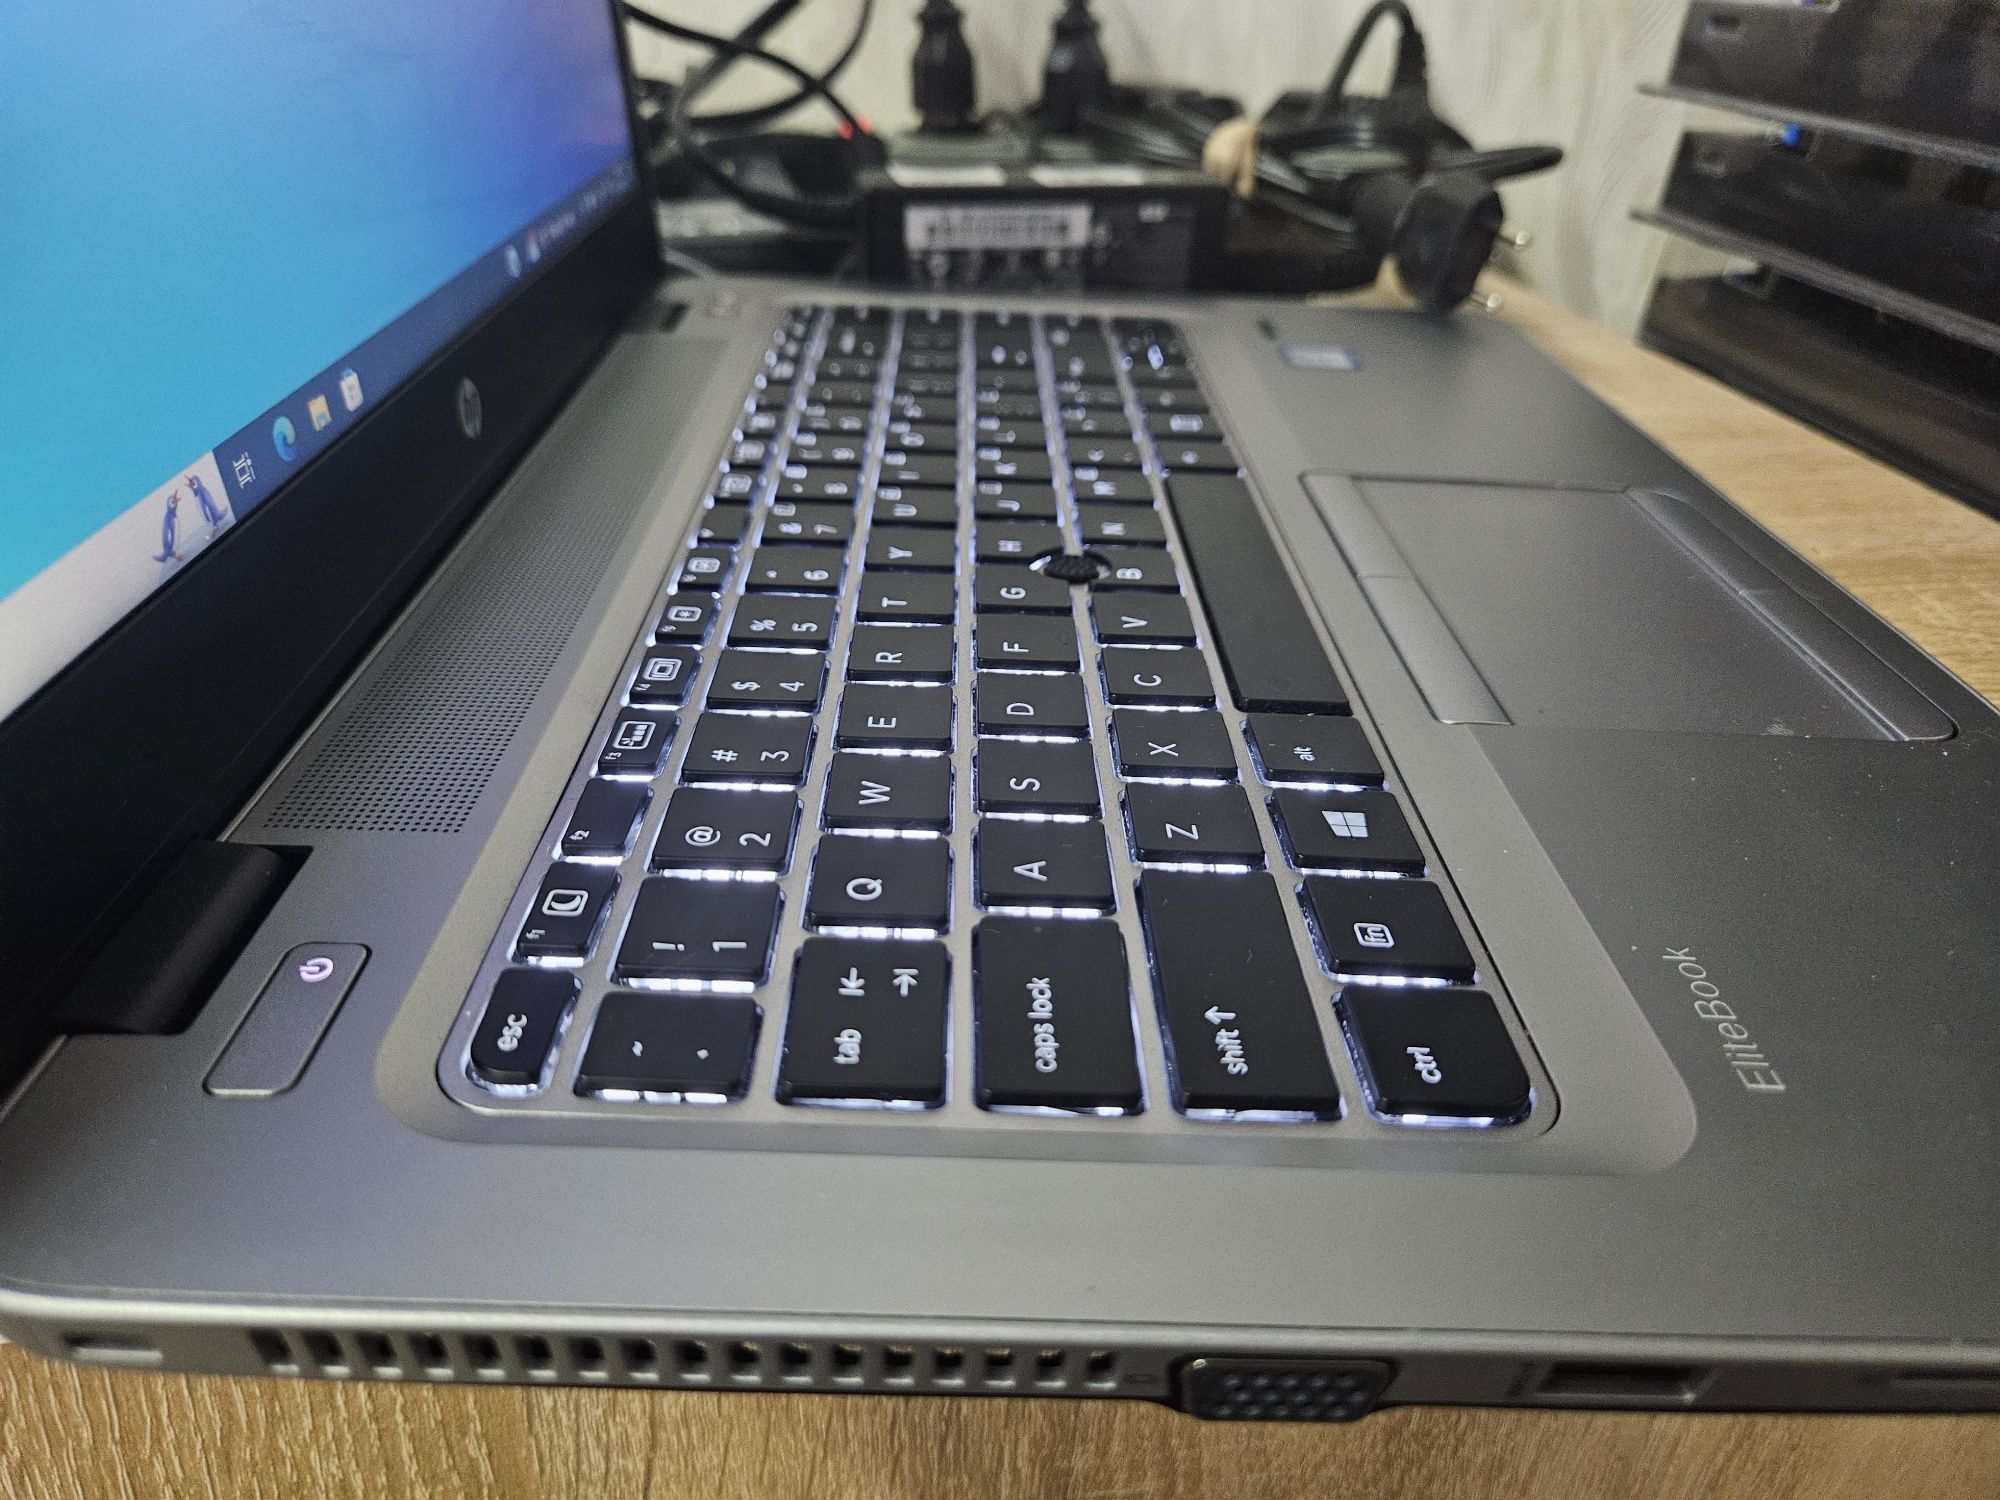 Ноутбук HP EliteBook 840 G3 i5-6300U/16Gb DDR4/ 128Gb SSD/14"